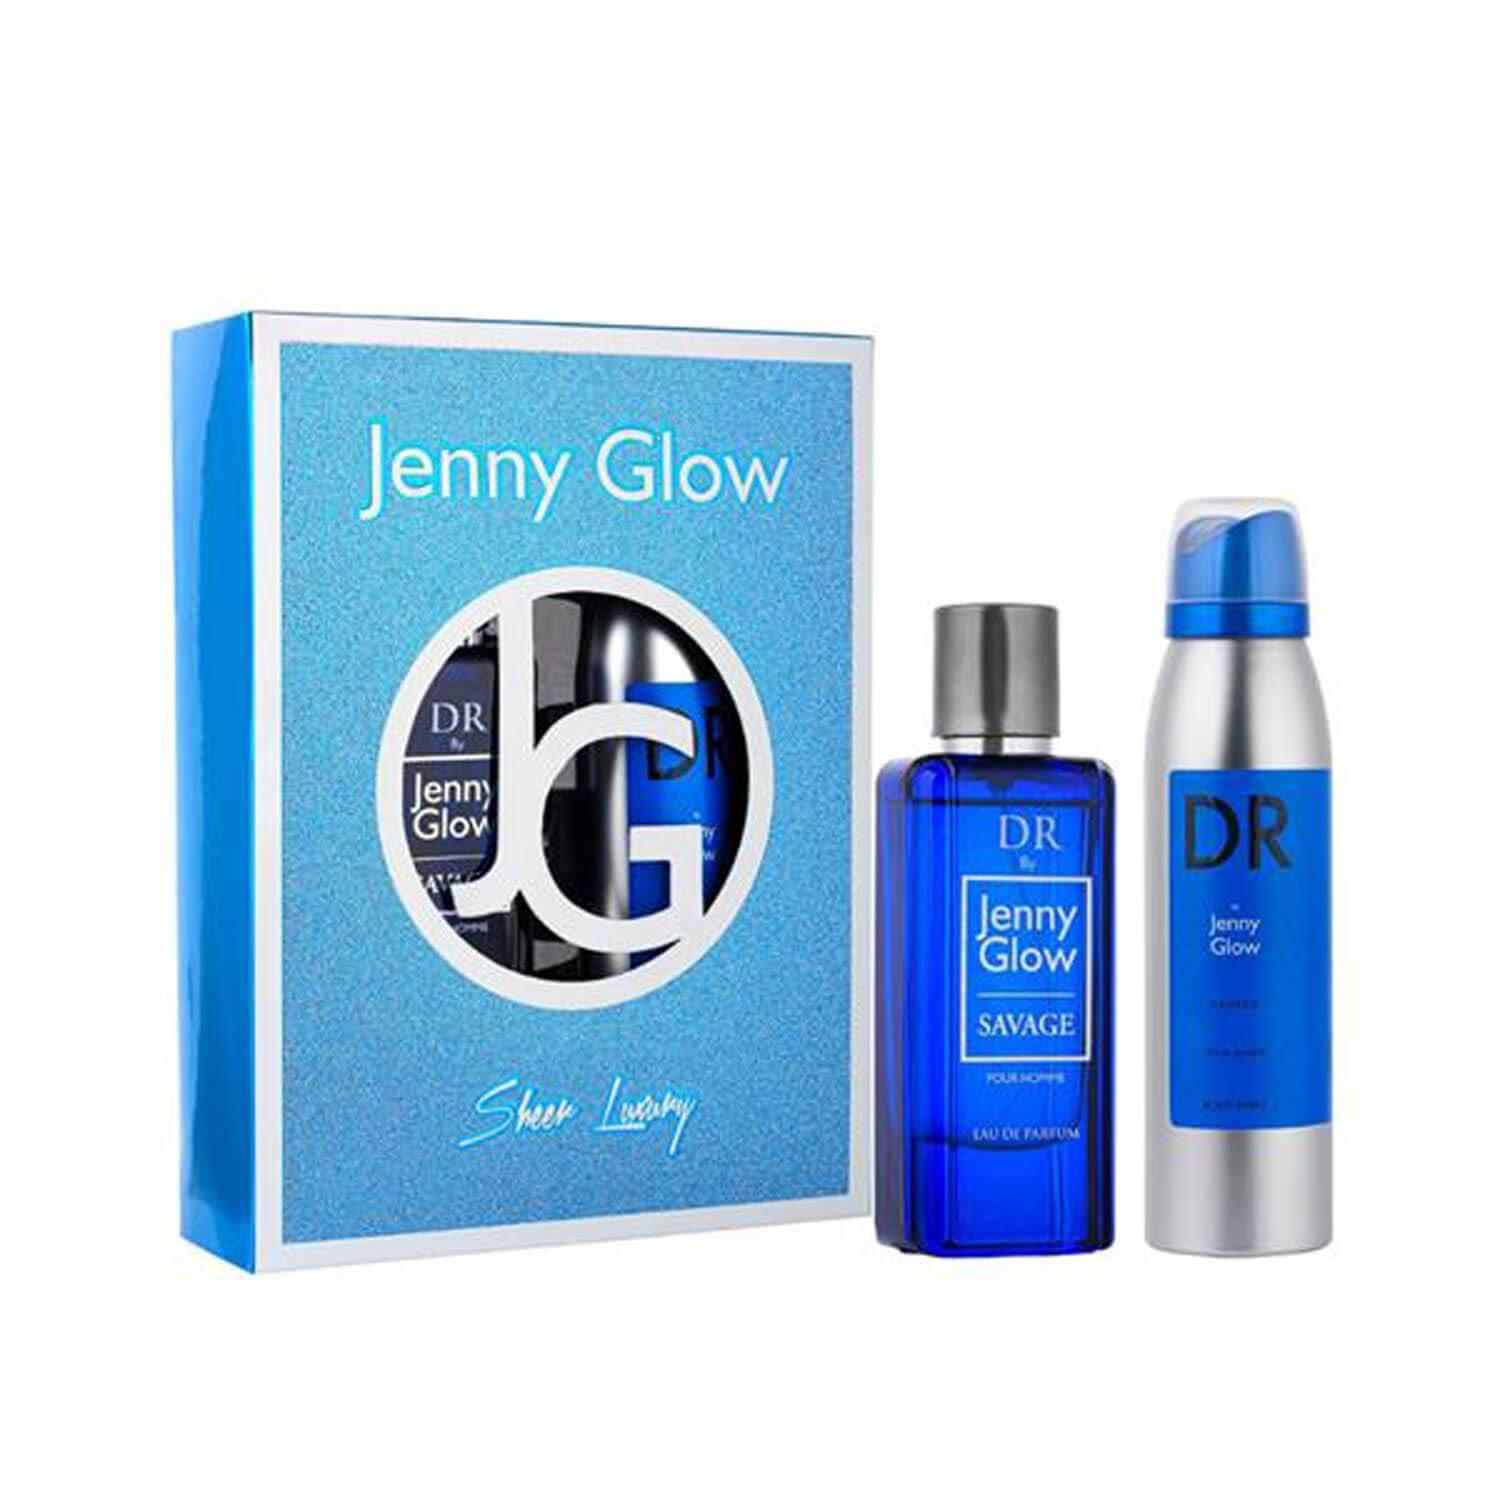 Jenny Glow Savage 2 Piece Set - Gift Sets